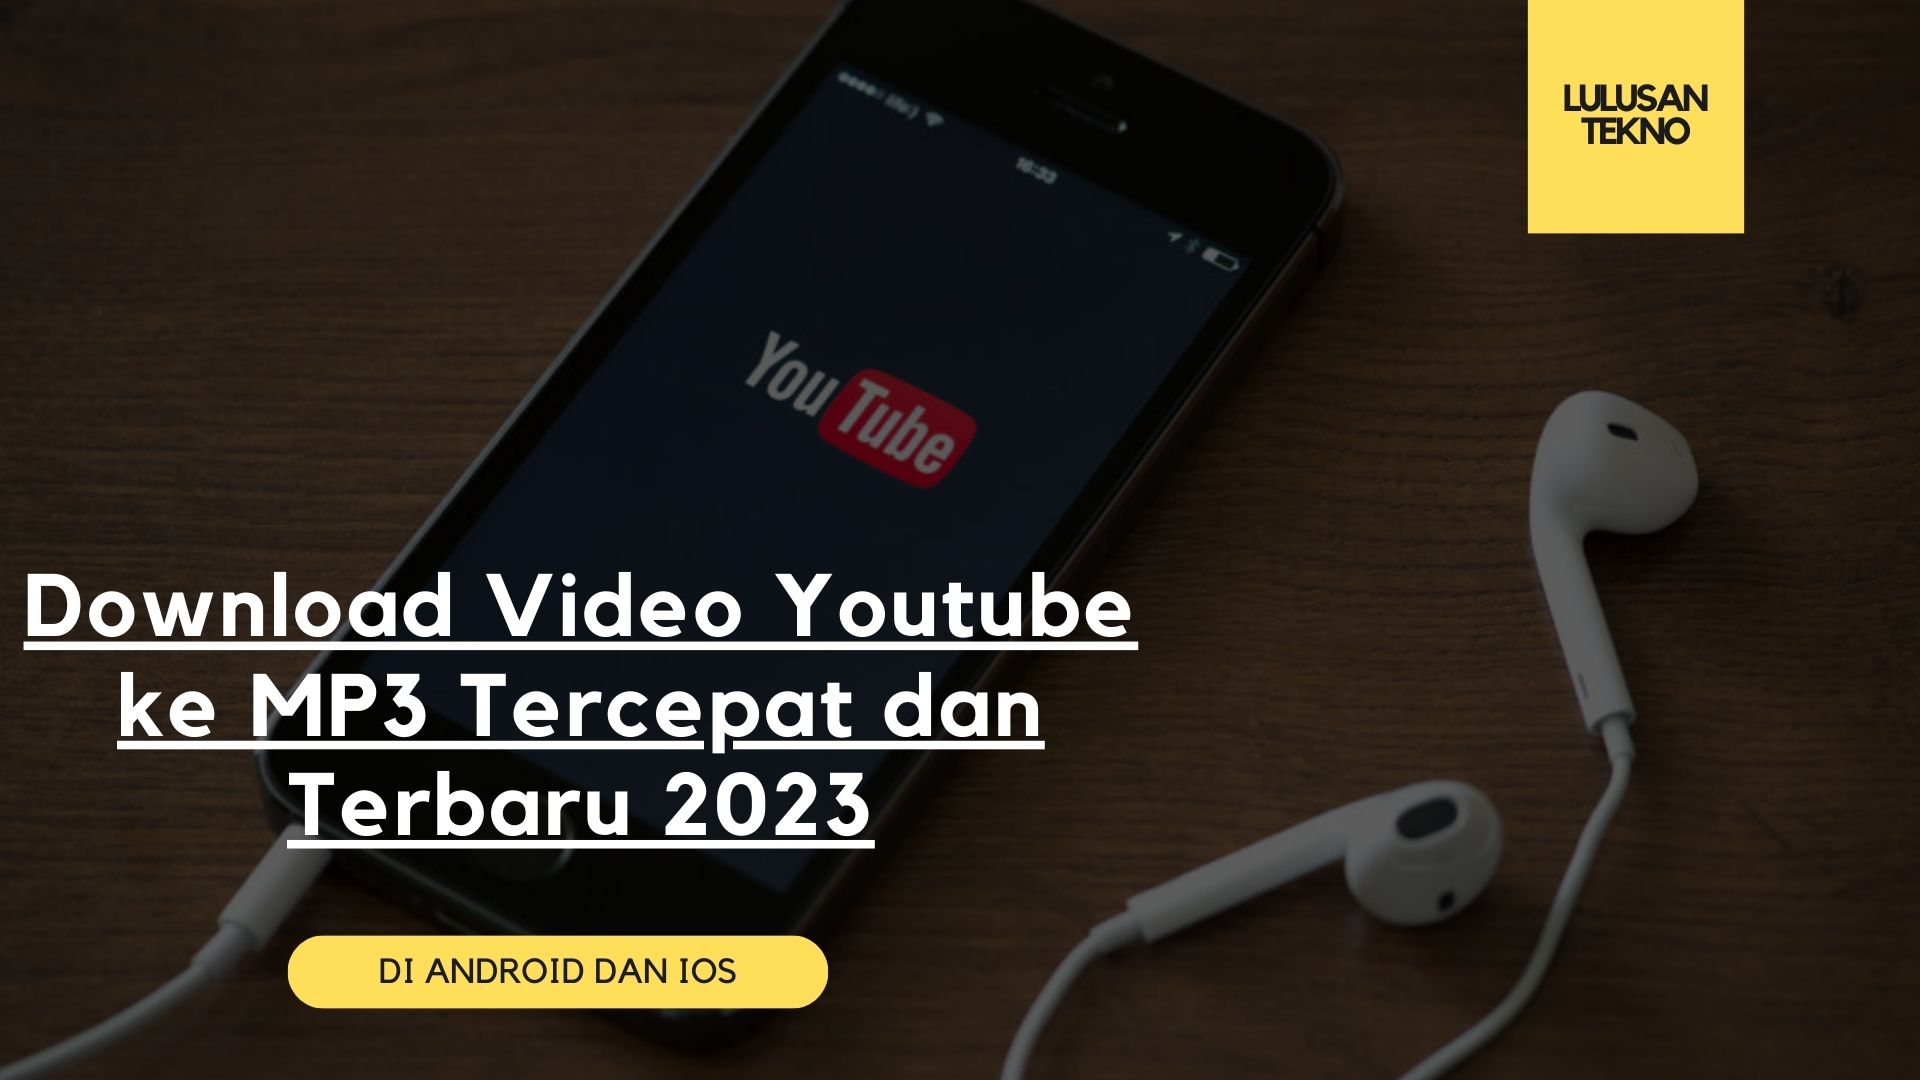 Download Video Youtube ke MP3 Tercepat dan Terbaru 2023